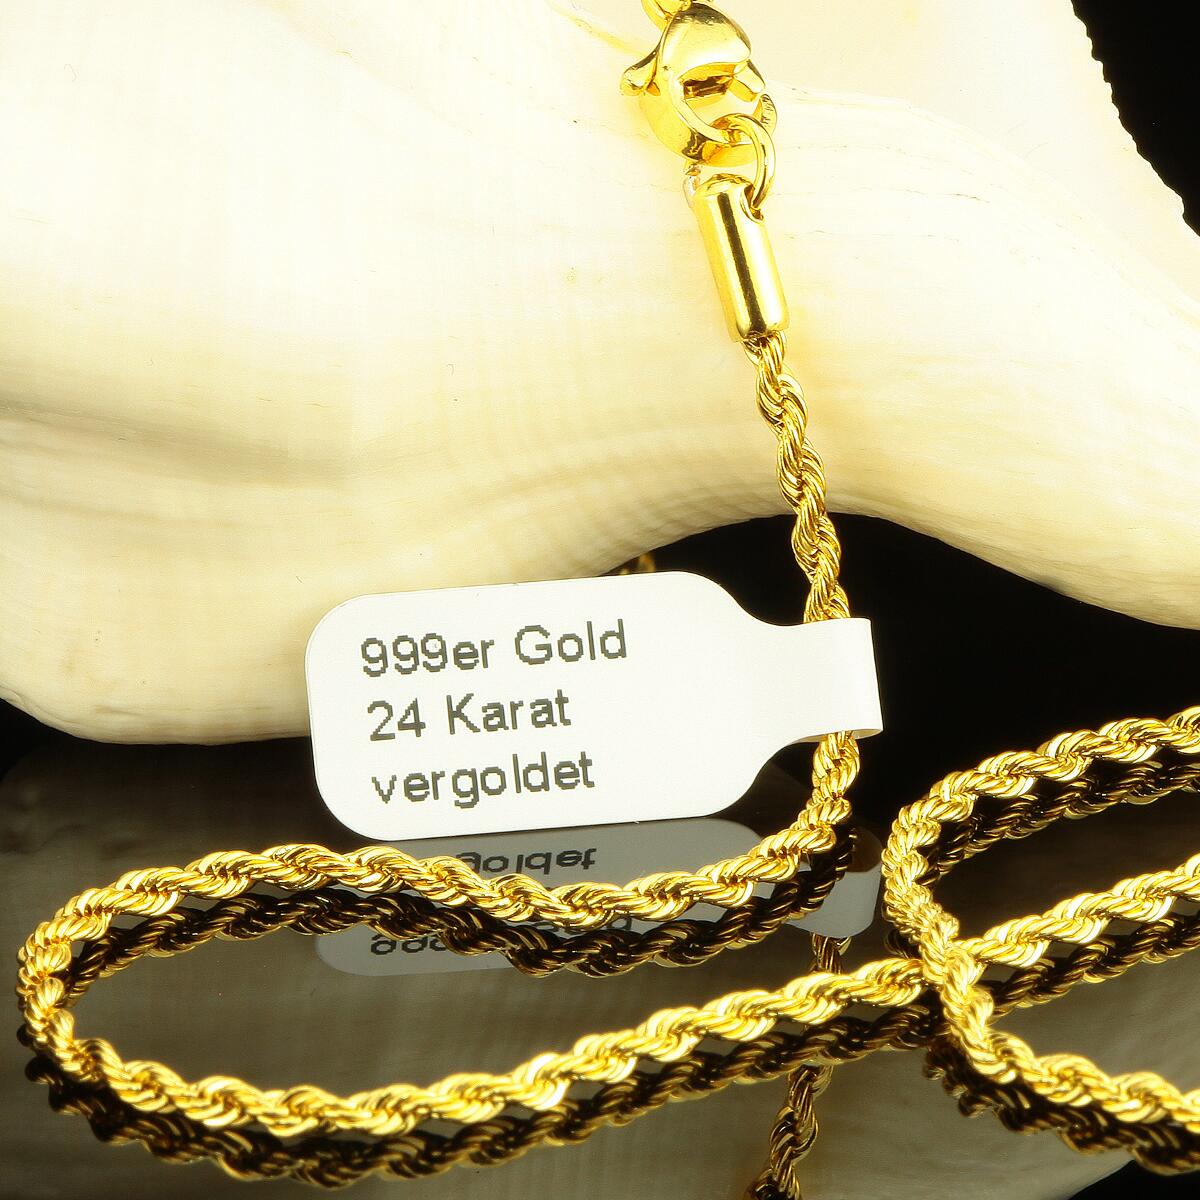 Kordelkette 2,5 mm 999er Gold 24 Karat vergoldet Damen Herren gelbgold K2878